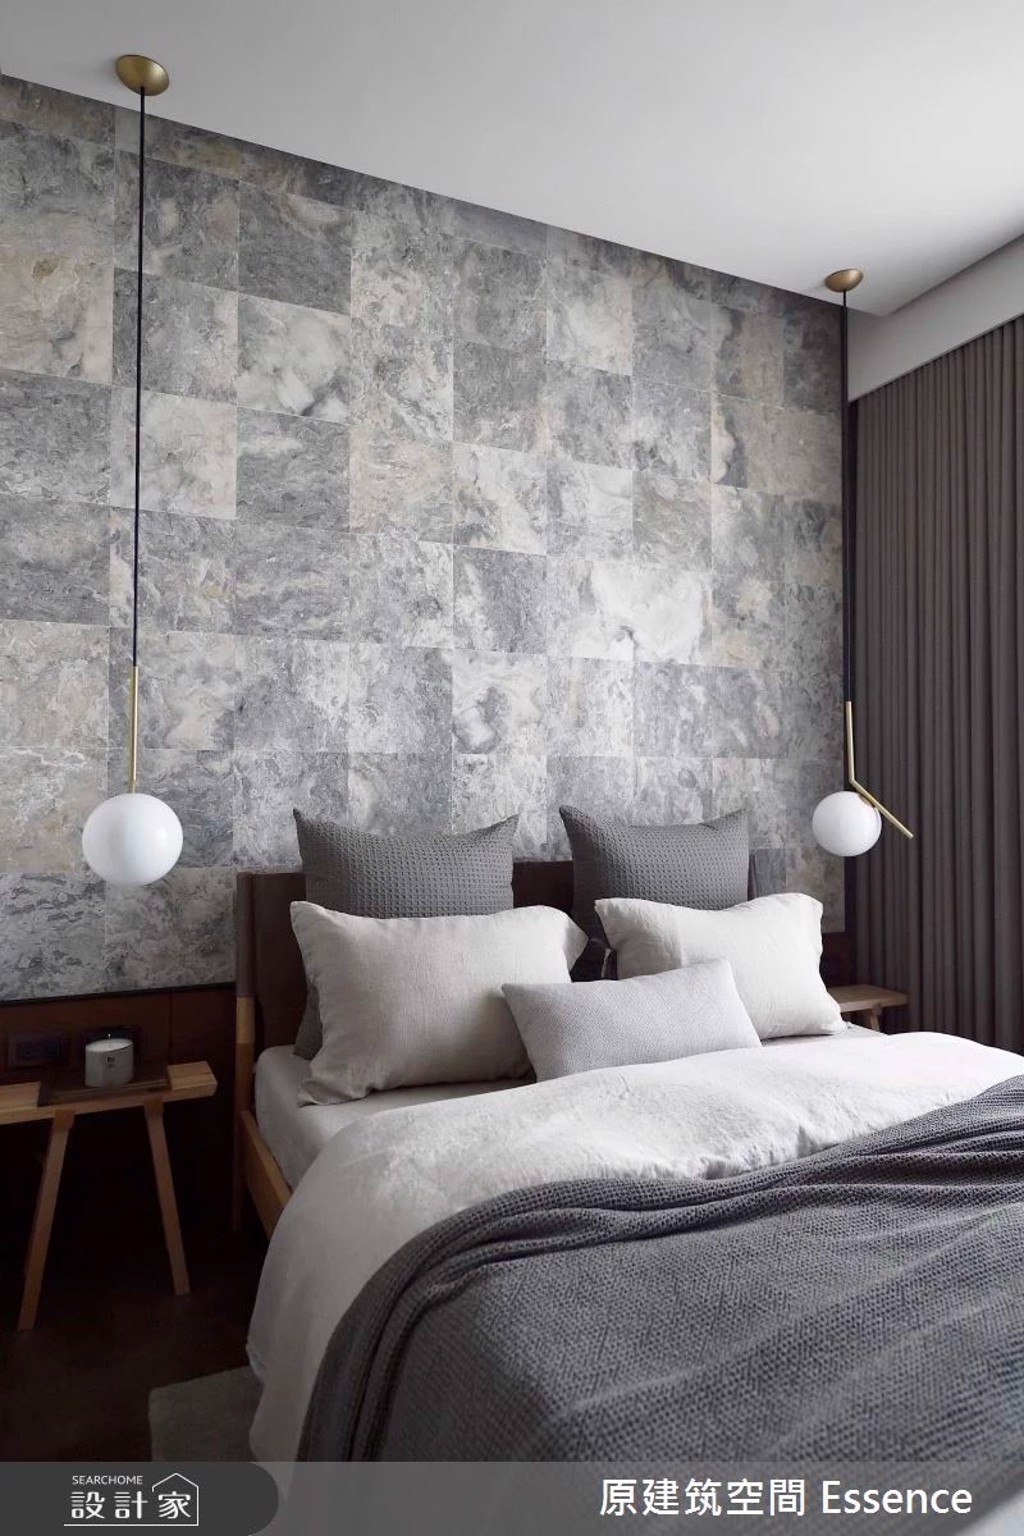 床頭背牆以台灣特有大理石做幾何拼接，灰階色調的紋理，搭配細緻的金屬燈飾，創造理性秩序和感性藝術的對話。（圖/設計家 Searchome)